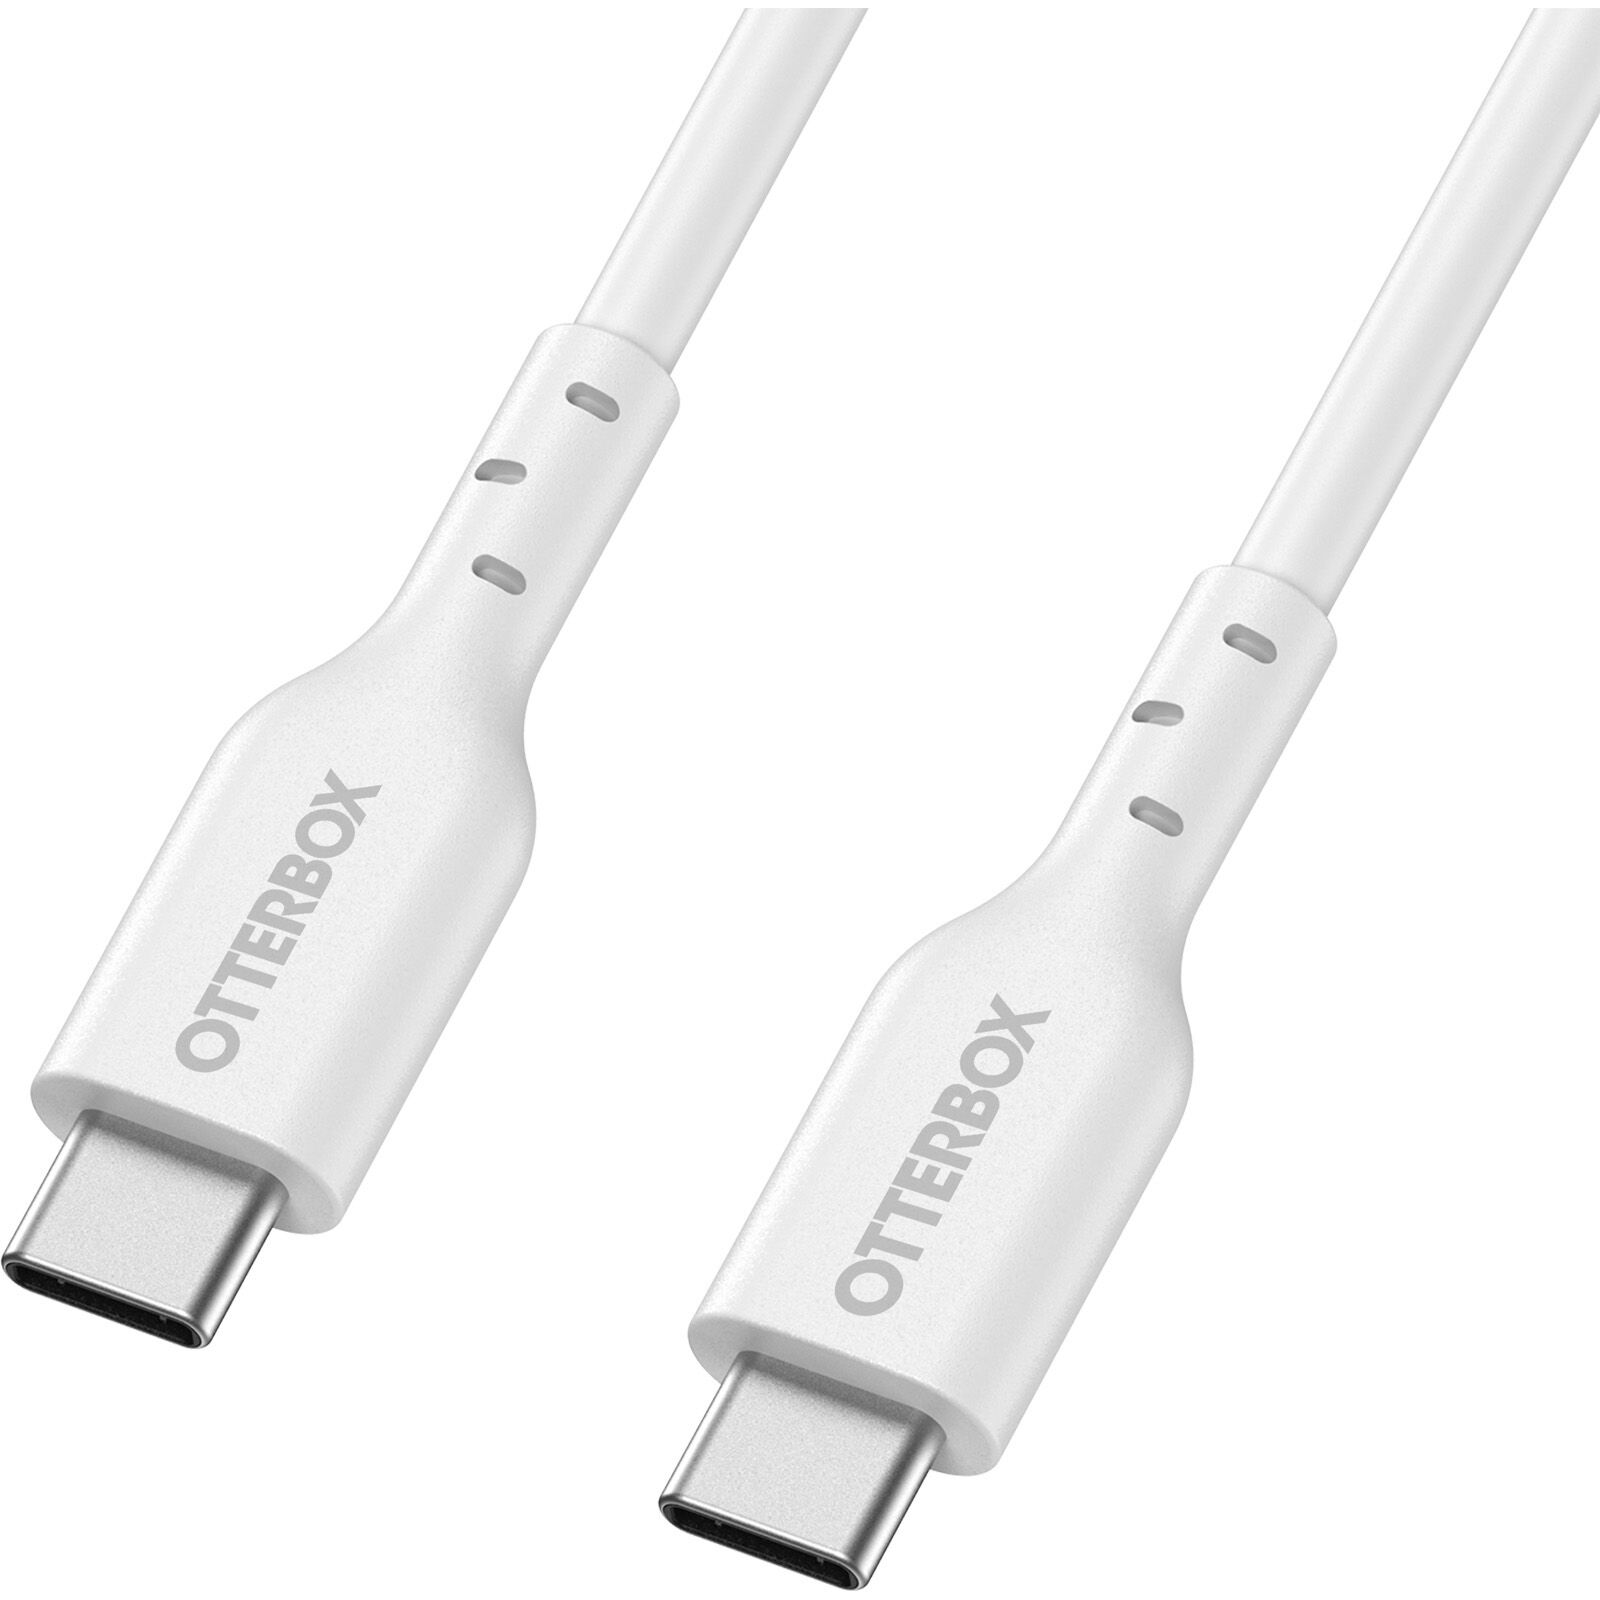 USB-C vers USB-C Câble 1 mètres Standard Fast Charge, blanc